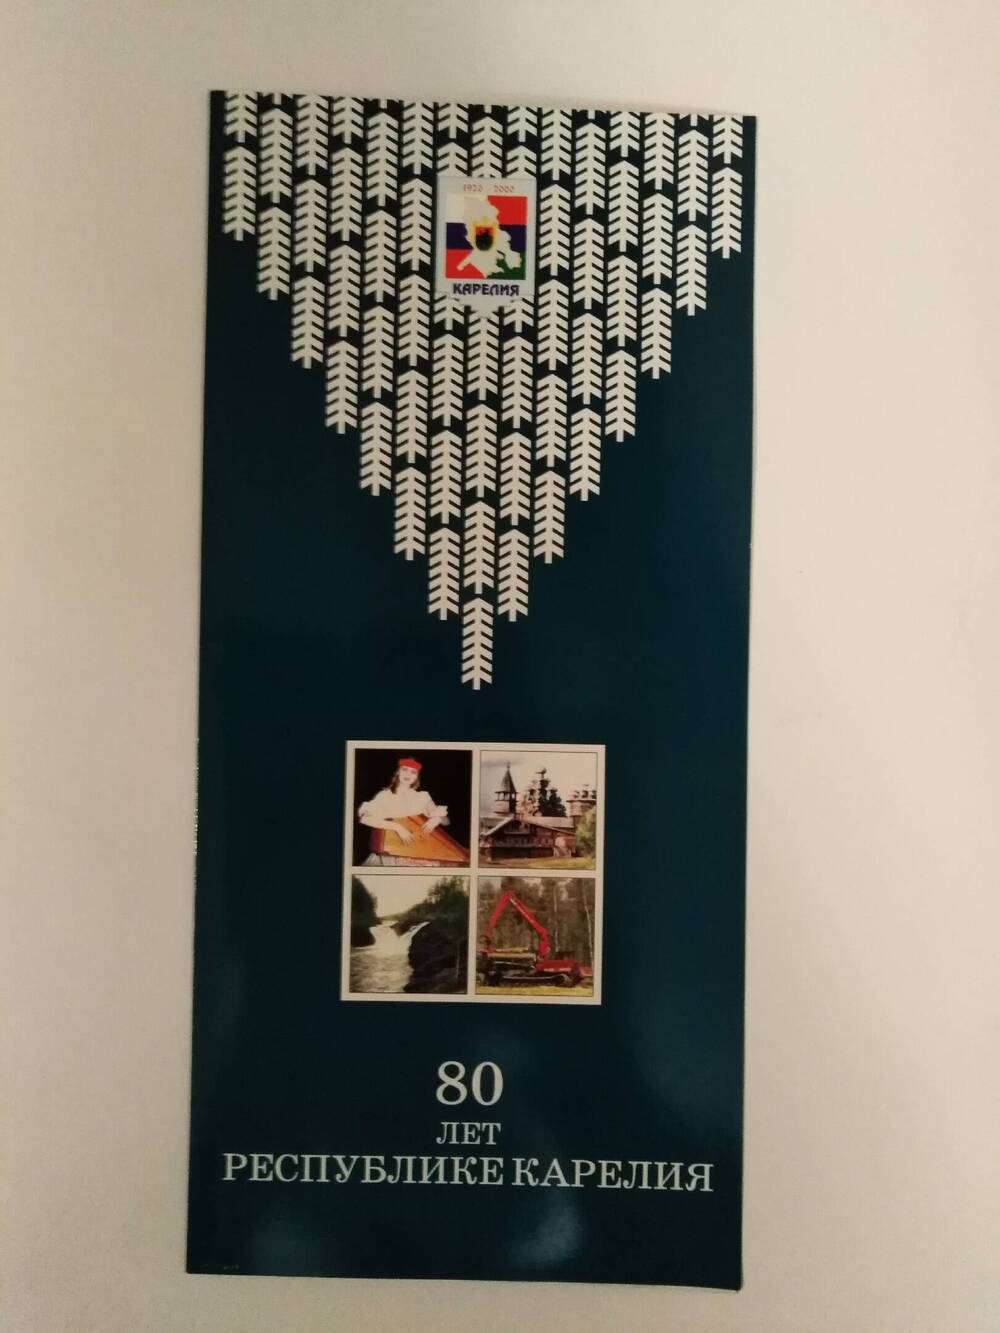 Буклет-поздравление Председателя Правительства РК Сергея Катанандова с 80-летием Республики Карелия.